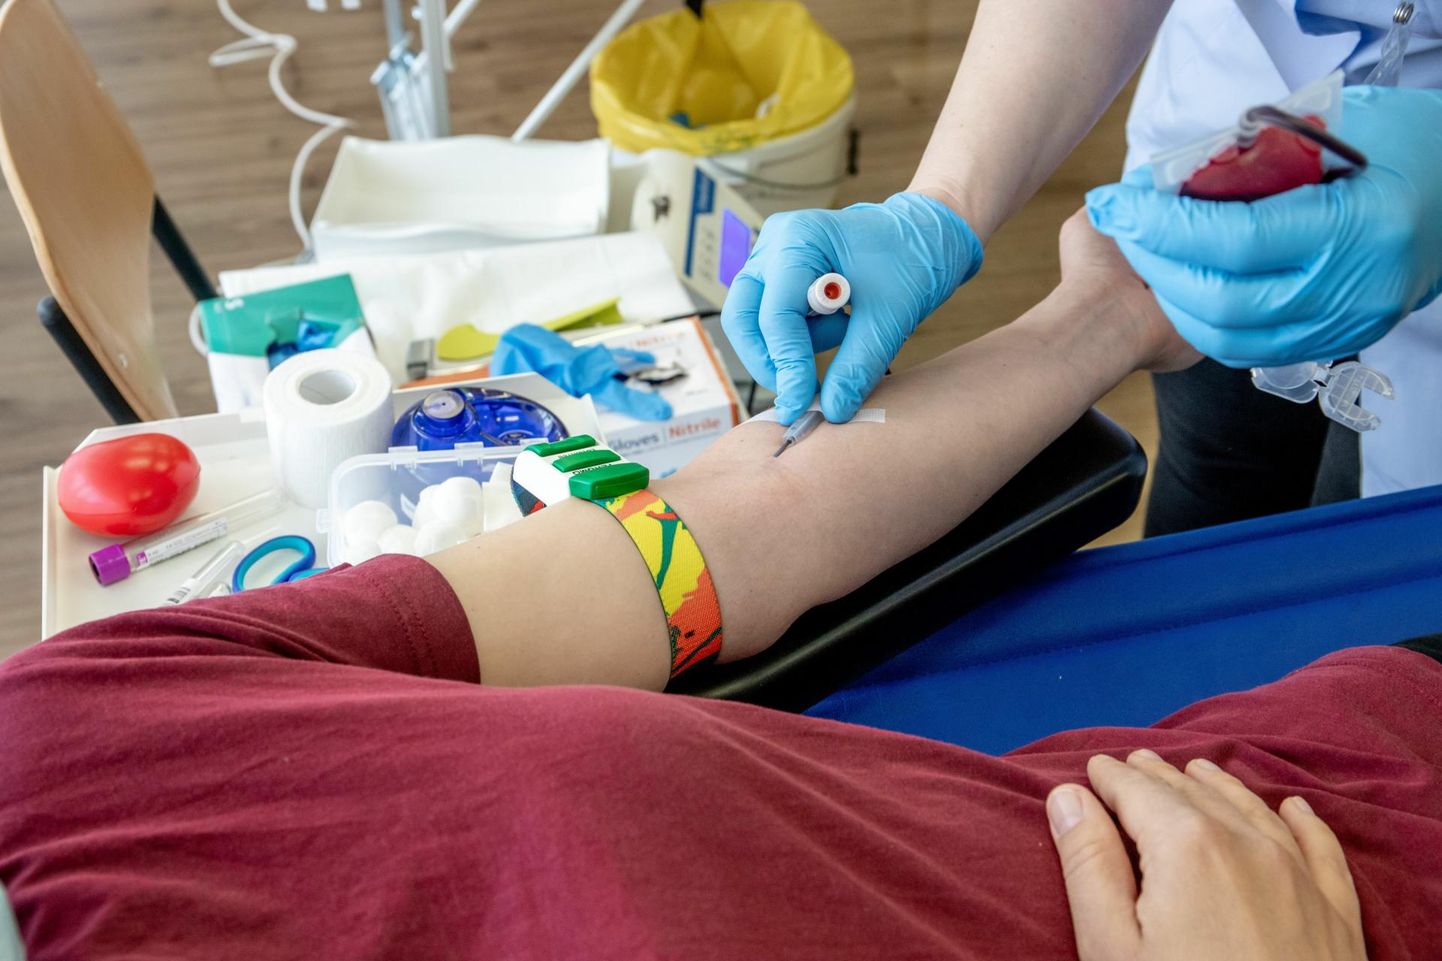 Pärnu verekeskuse töötajad käisid läinud kevadel Tralli lasteaias tervisekuul vereloovutamise tähtsusest rääkimas ja doonoriverd kogumas.